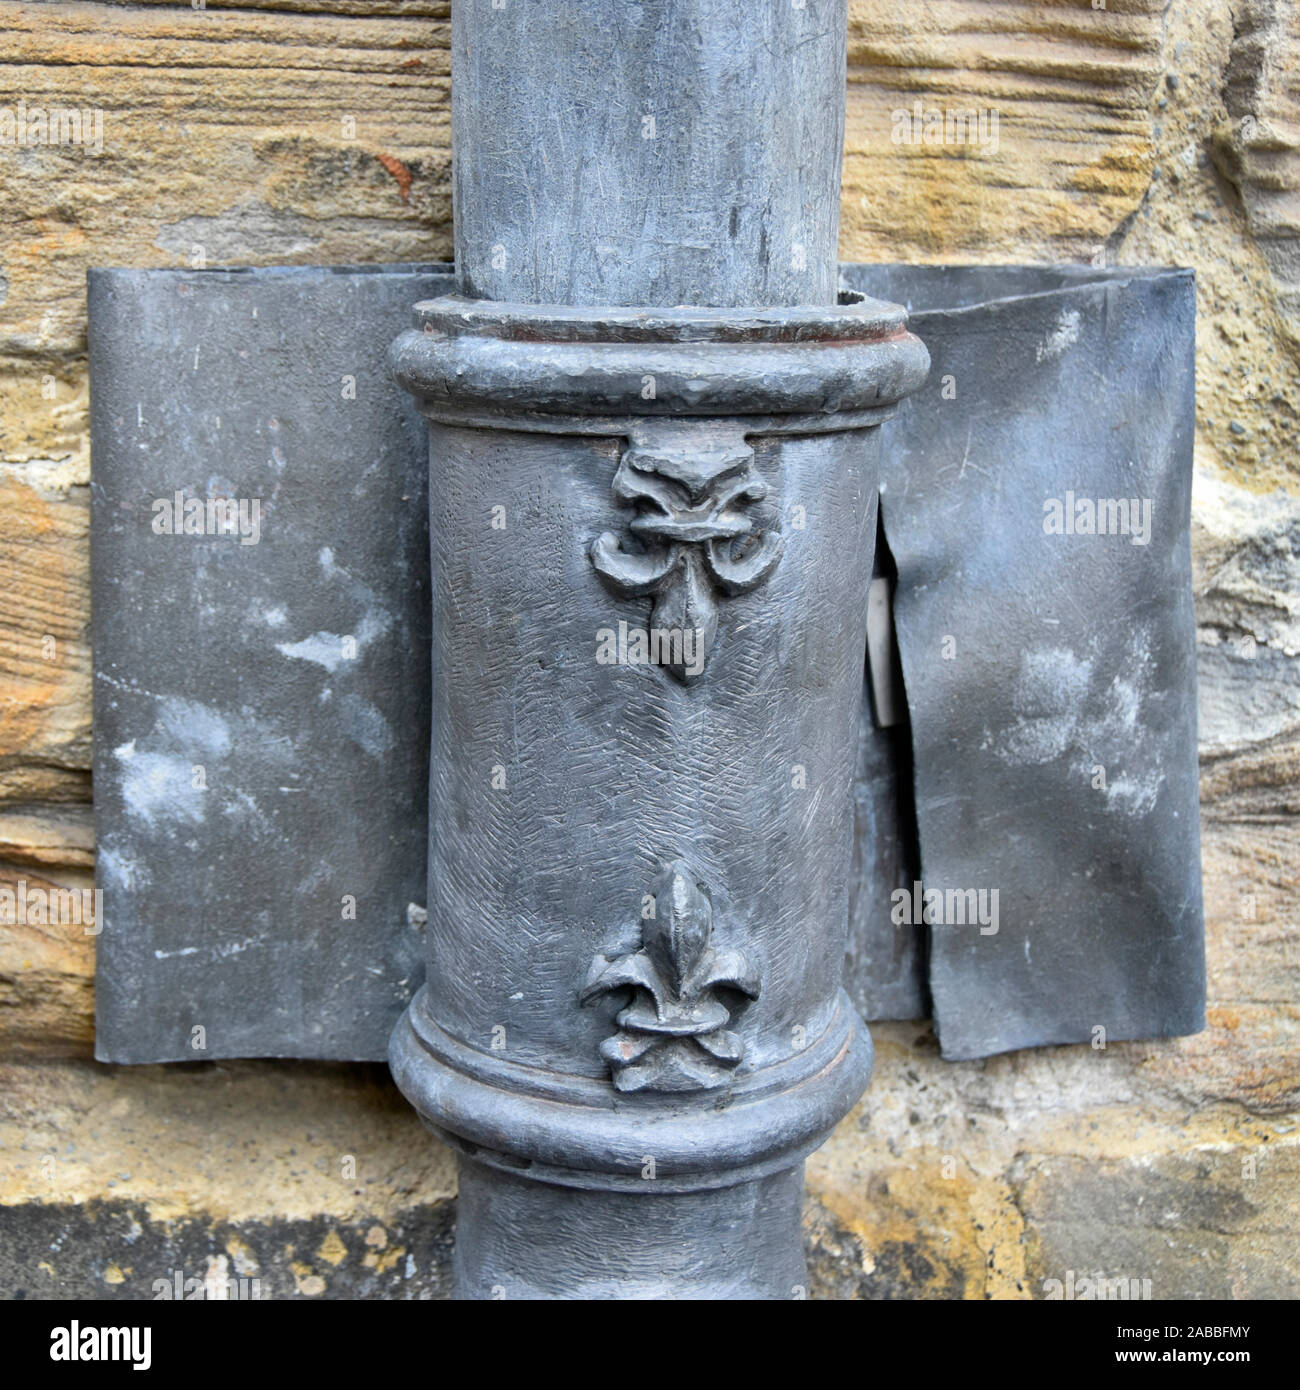 Close up 4 plomb" descente d'eaux pluviales & fleur de lis dessin ornemental sur la plomberie joint droit tenue le mur avec large ceinture de plomb de la cathédrale de Durham UK Banque D'Images